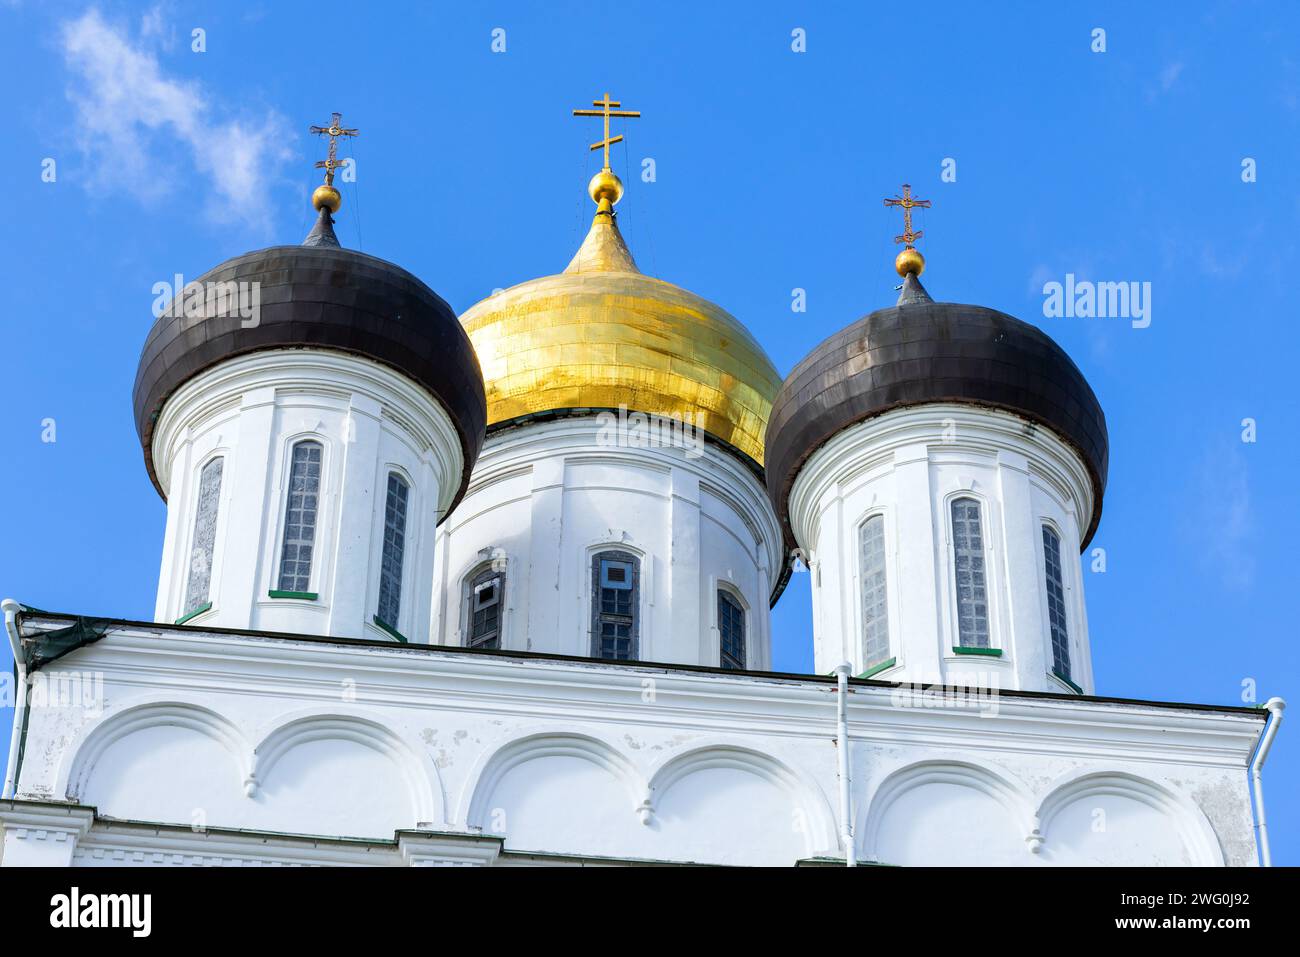 Cupole con croci dell'edificio della Chiesa ortodossa, antica architettura religiosa russa classica. La Cattedrale della Trinità si trova a Psko dal 1589 Foto Stock